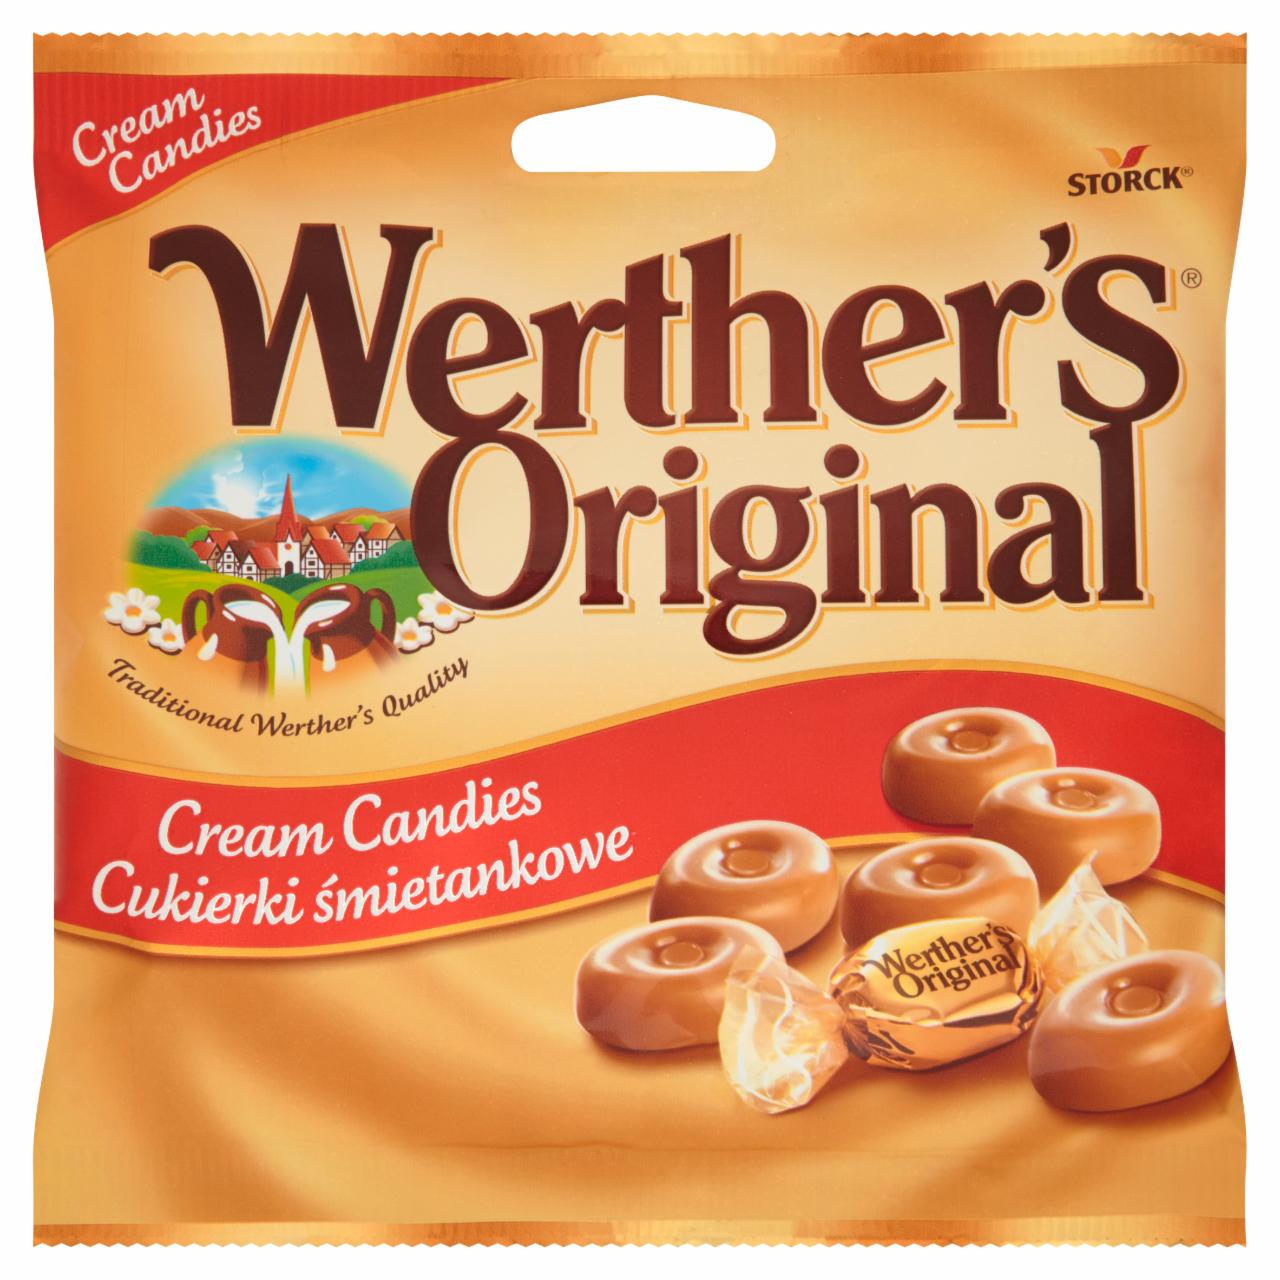 Képek - Werther's Original tejszínes töltetlen keménycukorka 90 g